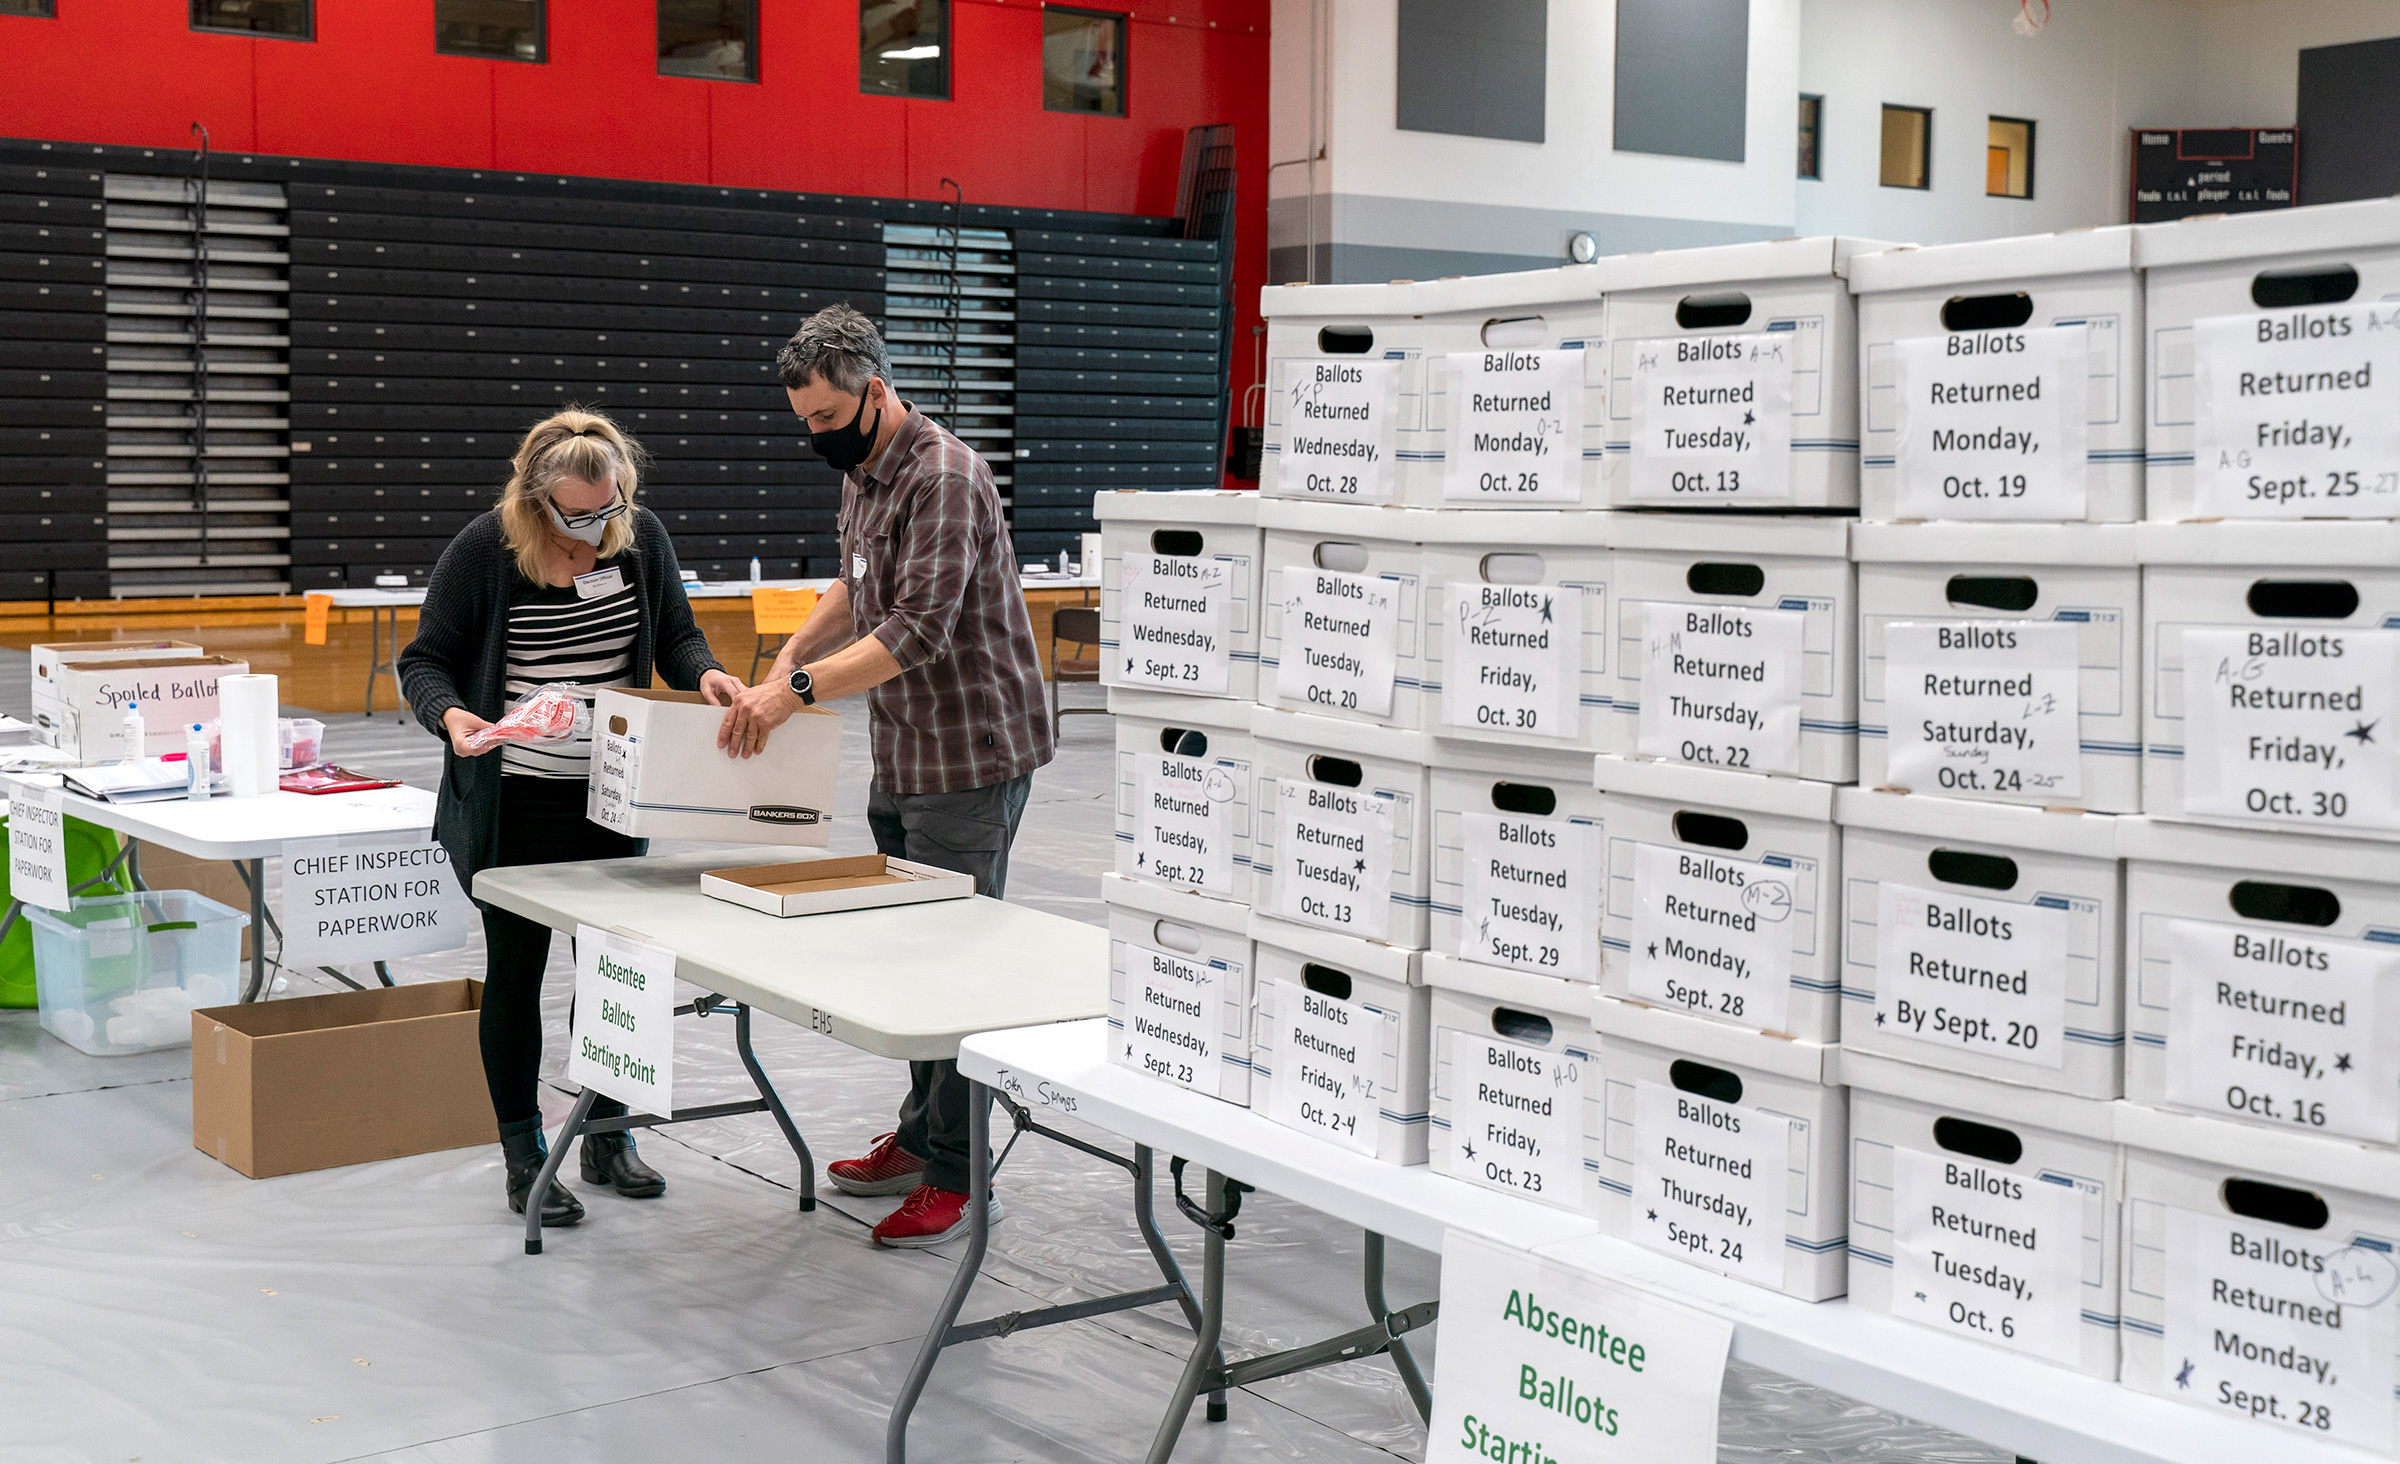 Nhân viên phòng phiếu kiểm tra thùng phiếu bầu khiếm diện trong phòng tập thể dục tại trường Trung học Sun Prairie ở Sun Prairie, Wisconsin, vào ngày 03/11/2020. (Ảnh: Andy Manis / Getty Images)